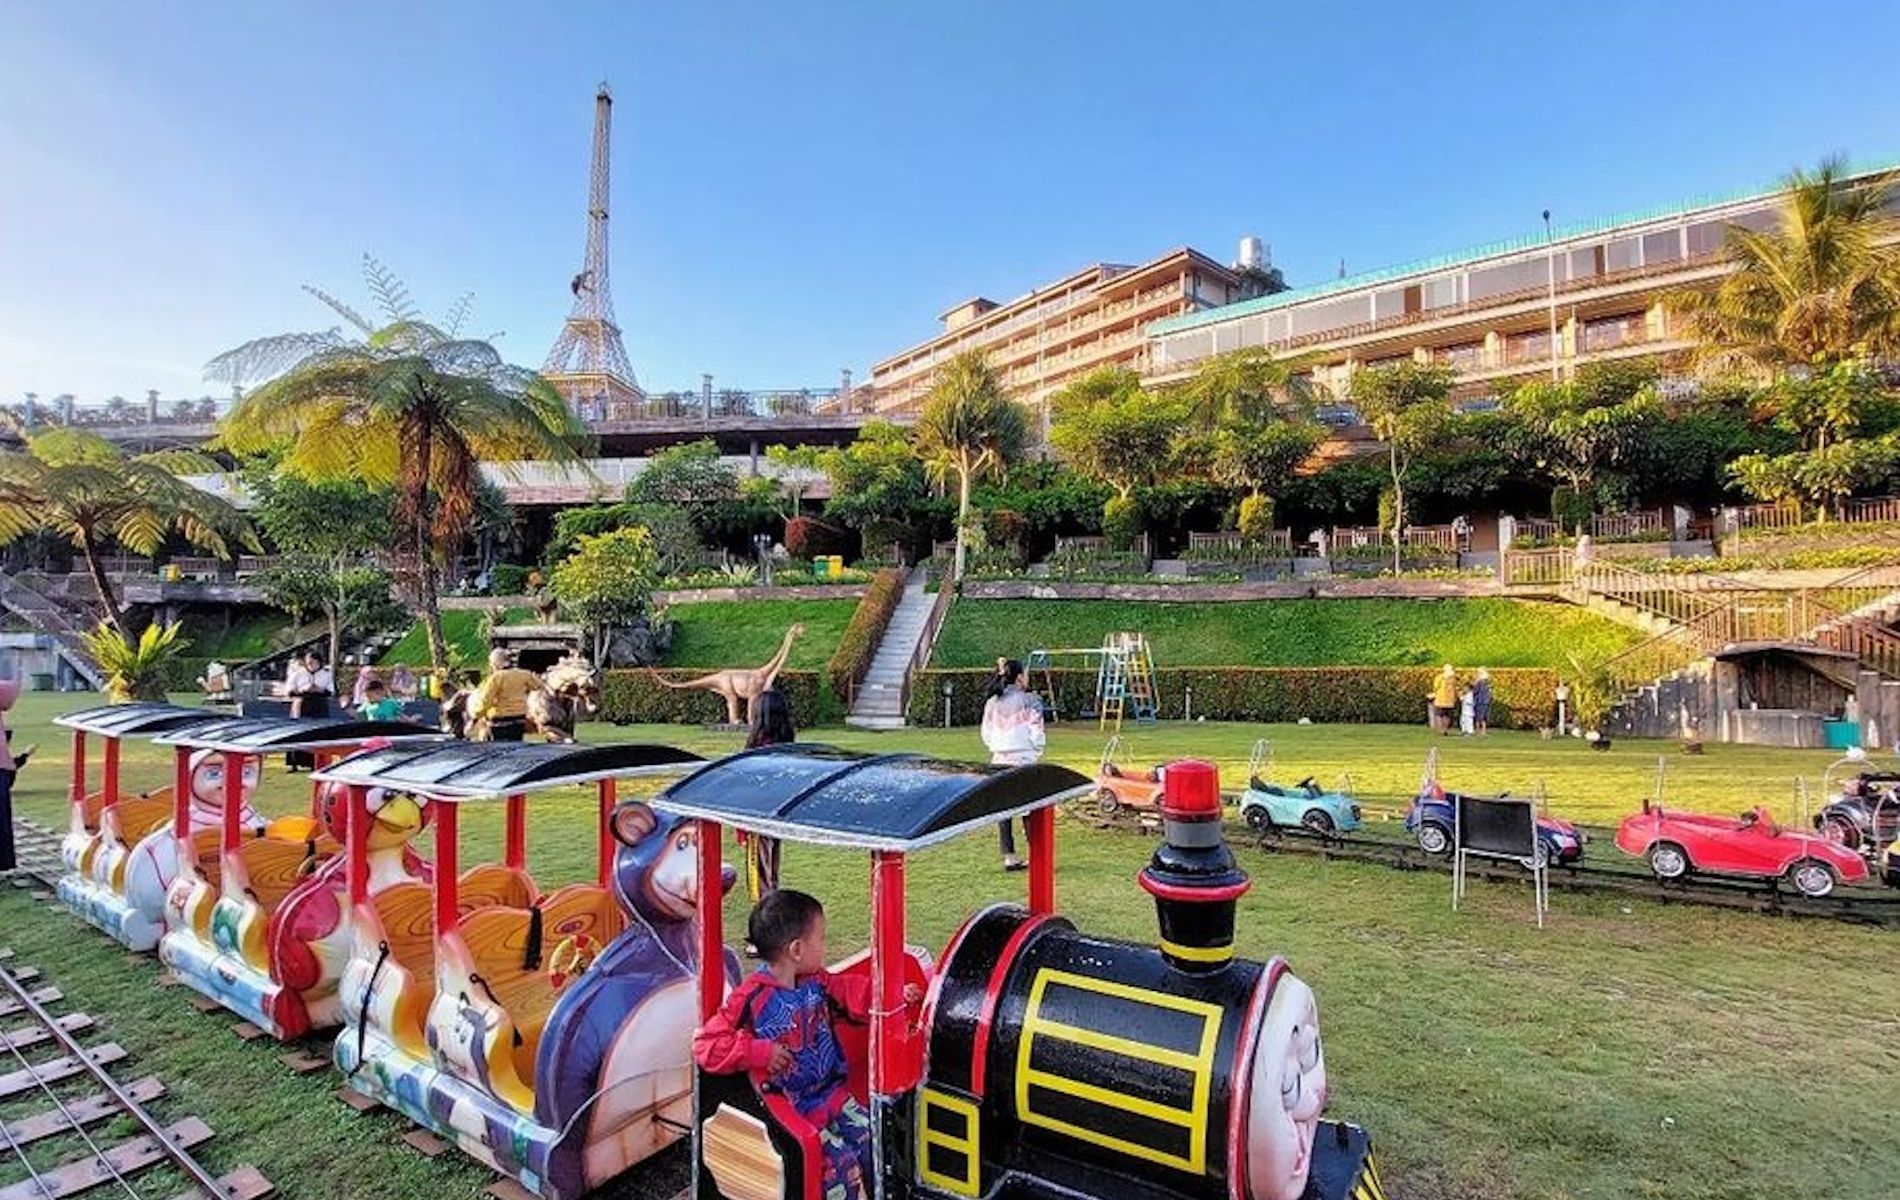 Wisata miniatur menara Eiffel Paris di Seruni Hotel Bogor.